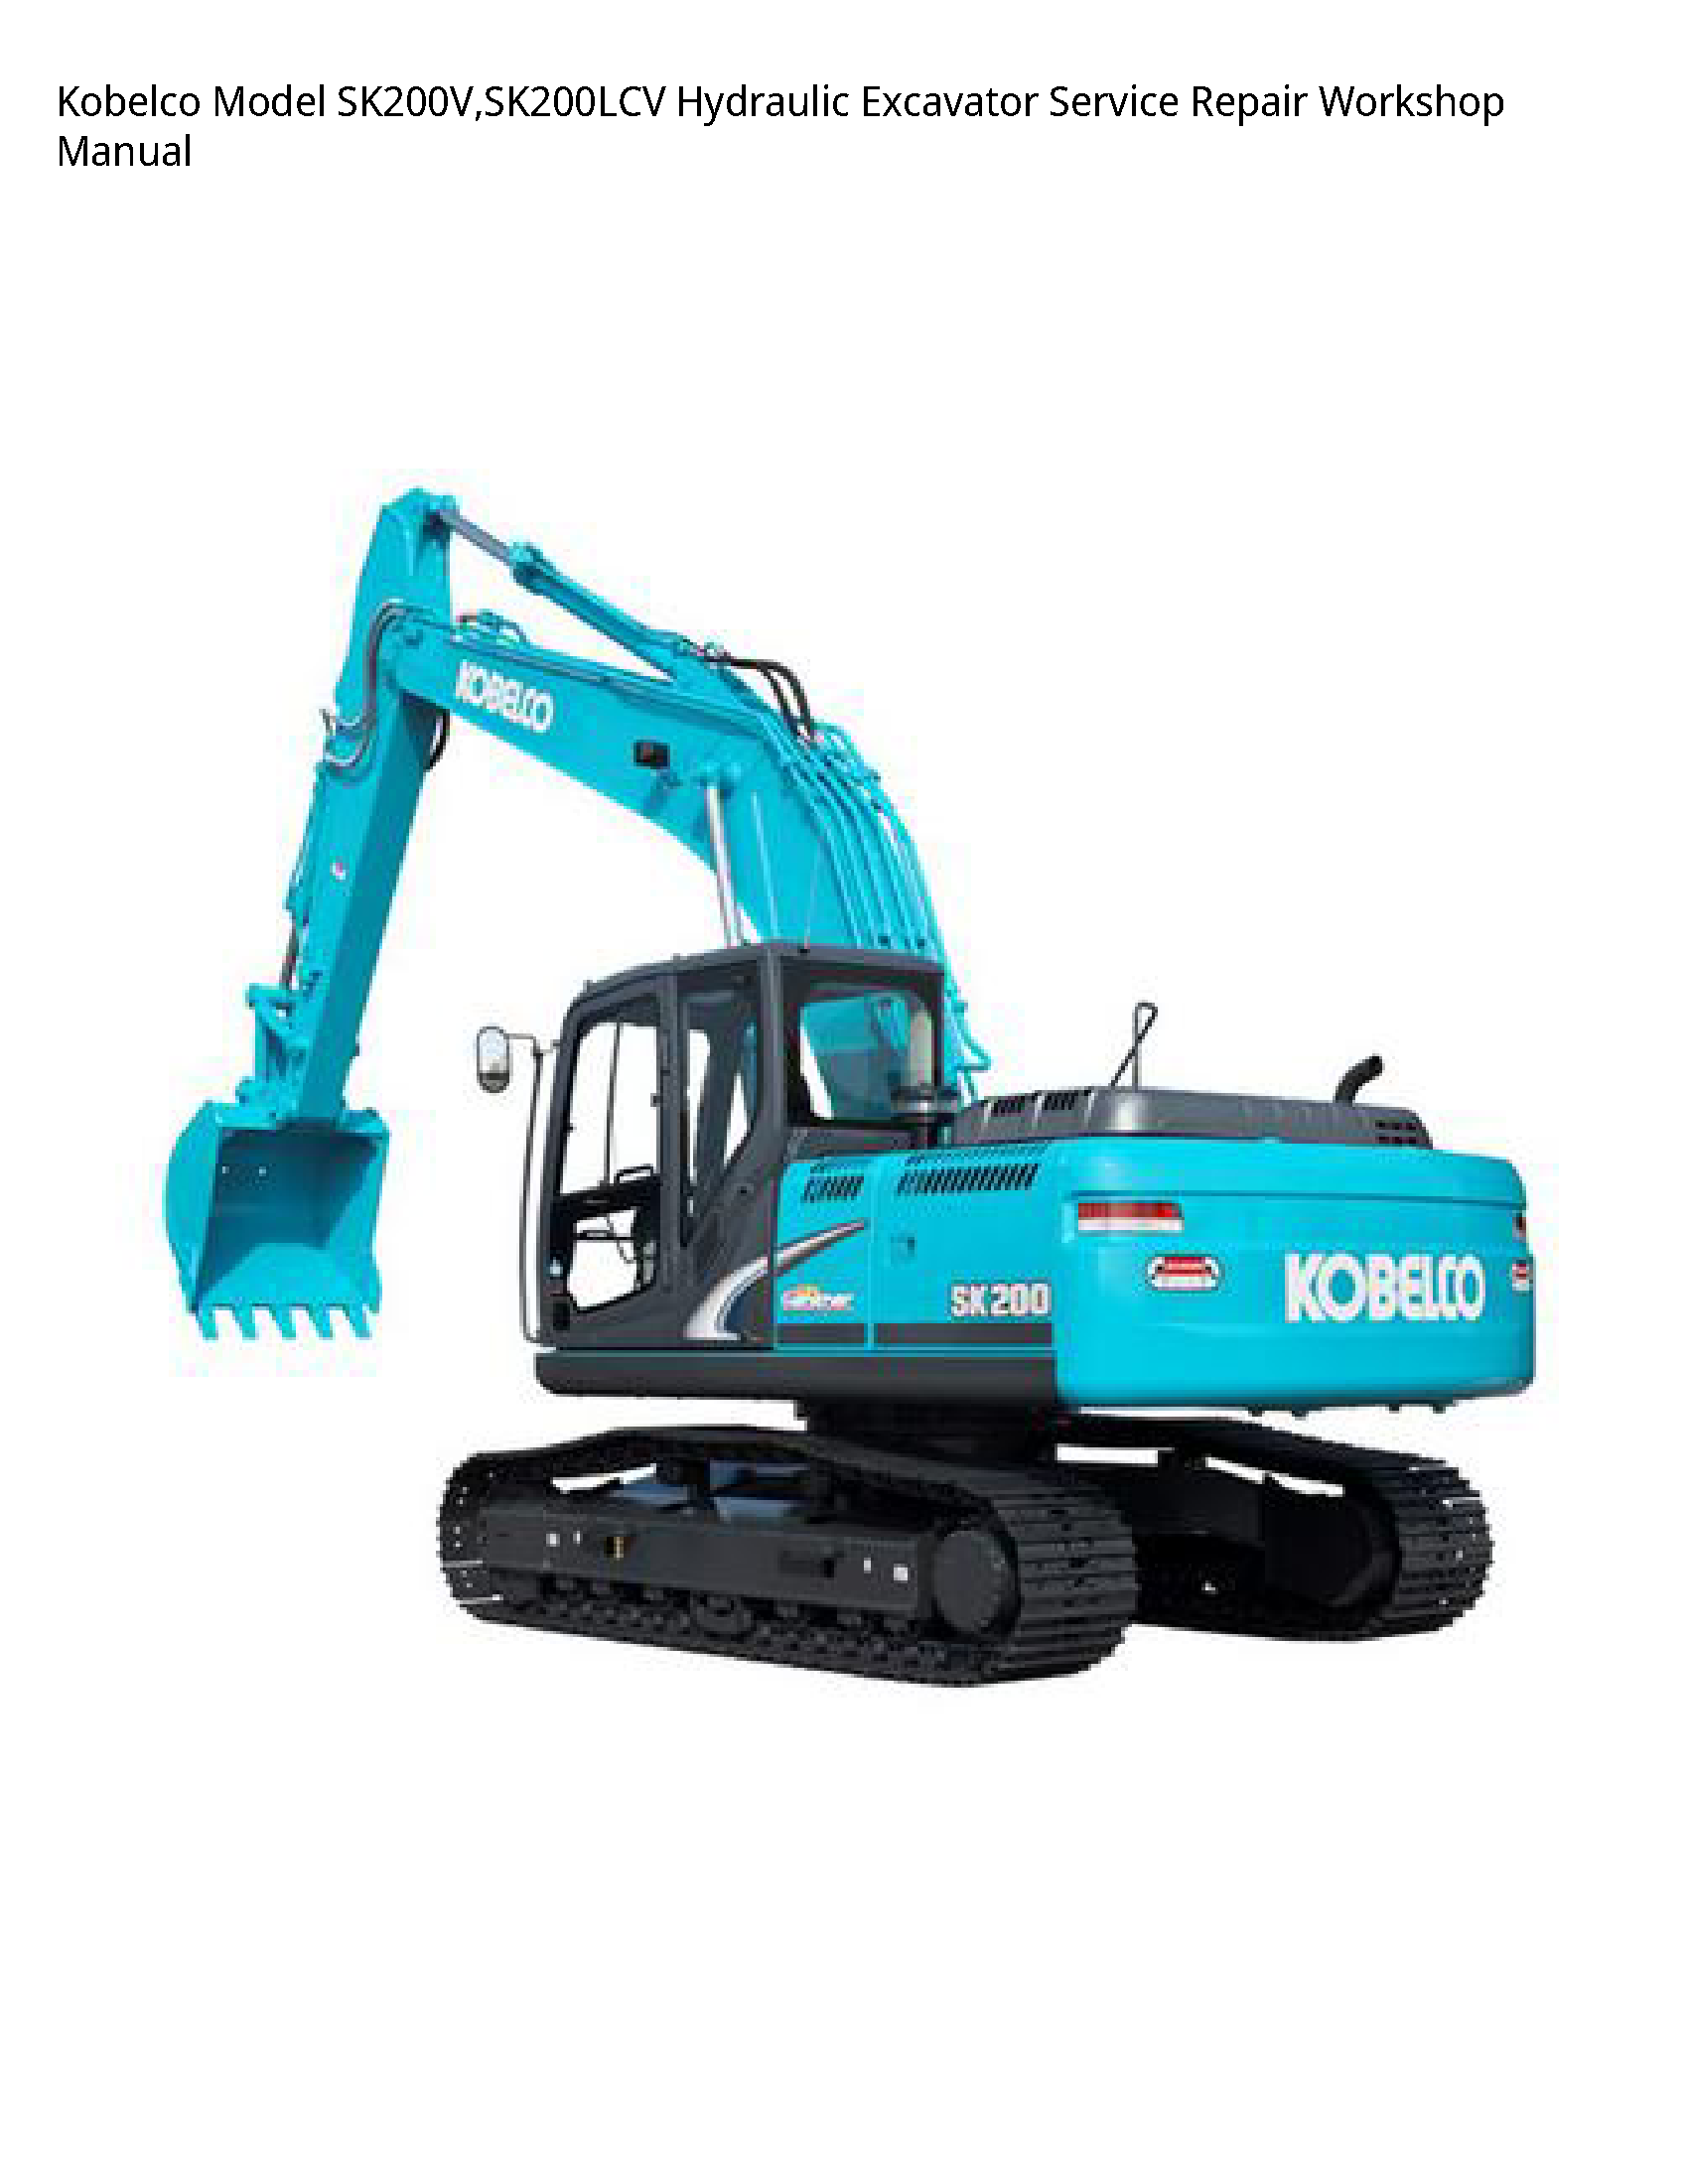 Kobelco SK200V Model Hydraulic Excavator manual